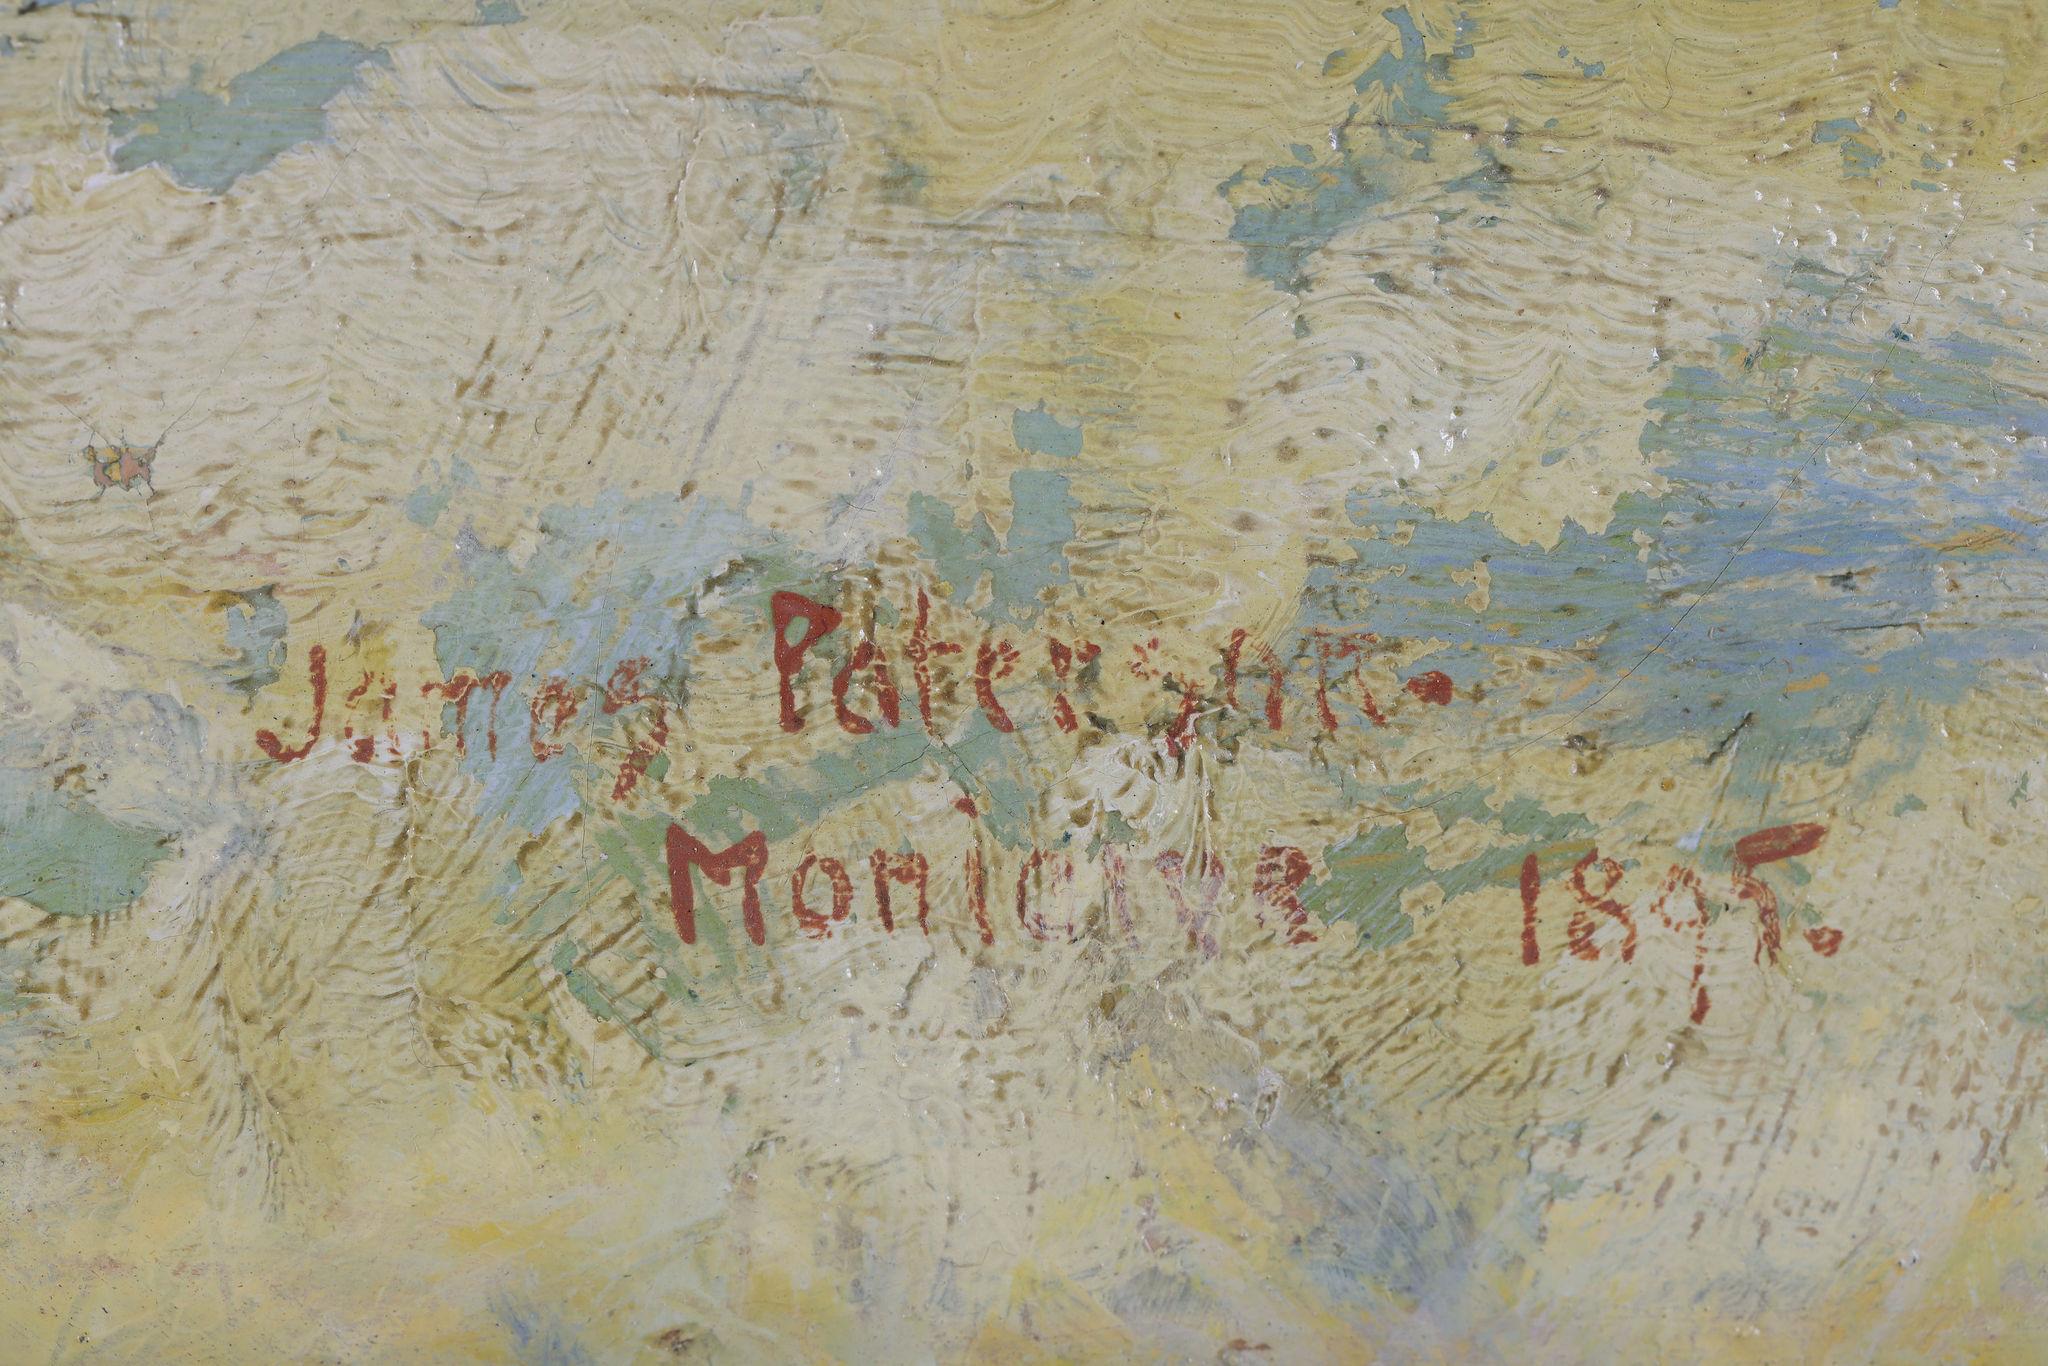 James Paterson
Signé et daté 1895

Au verso, signé James Paterson
176 Bath Street, Glasgow
Killniess, Moniaive, Écosse au verso

Taille de la toile : 21 x 26